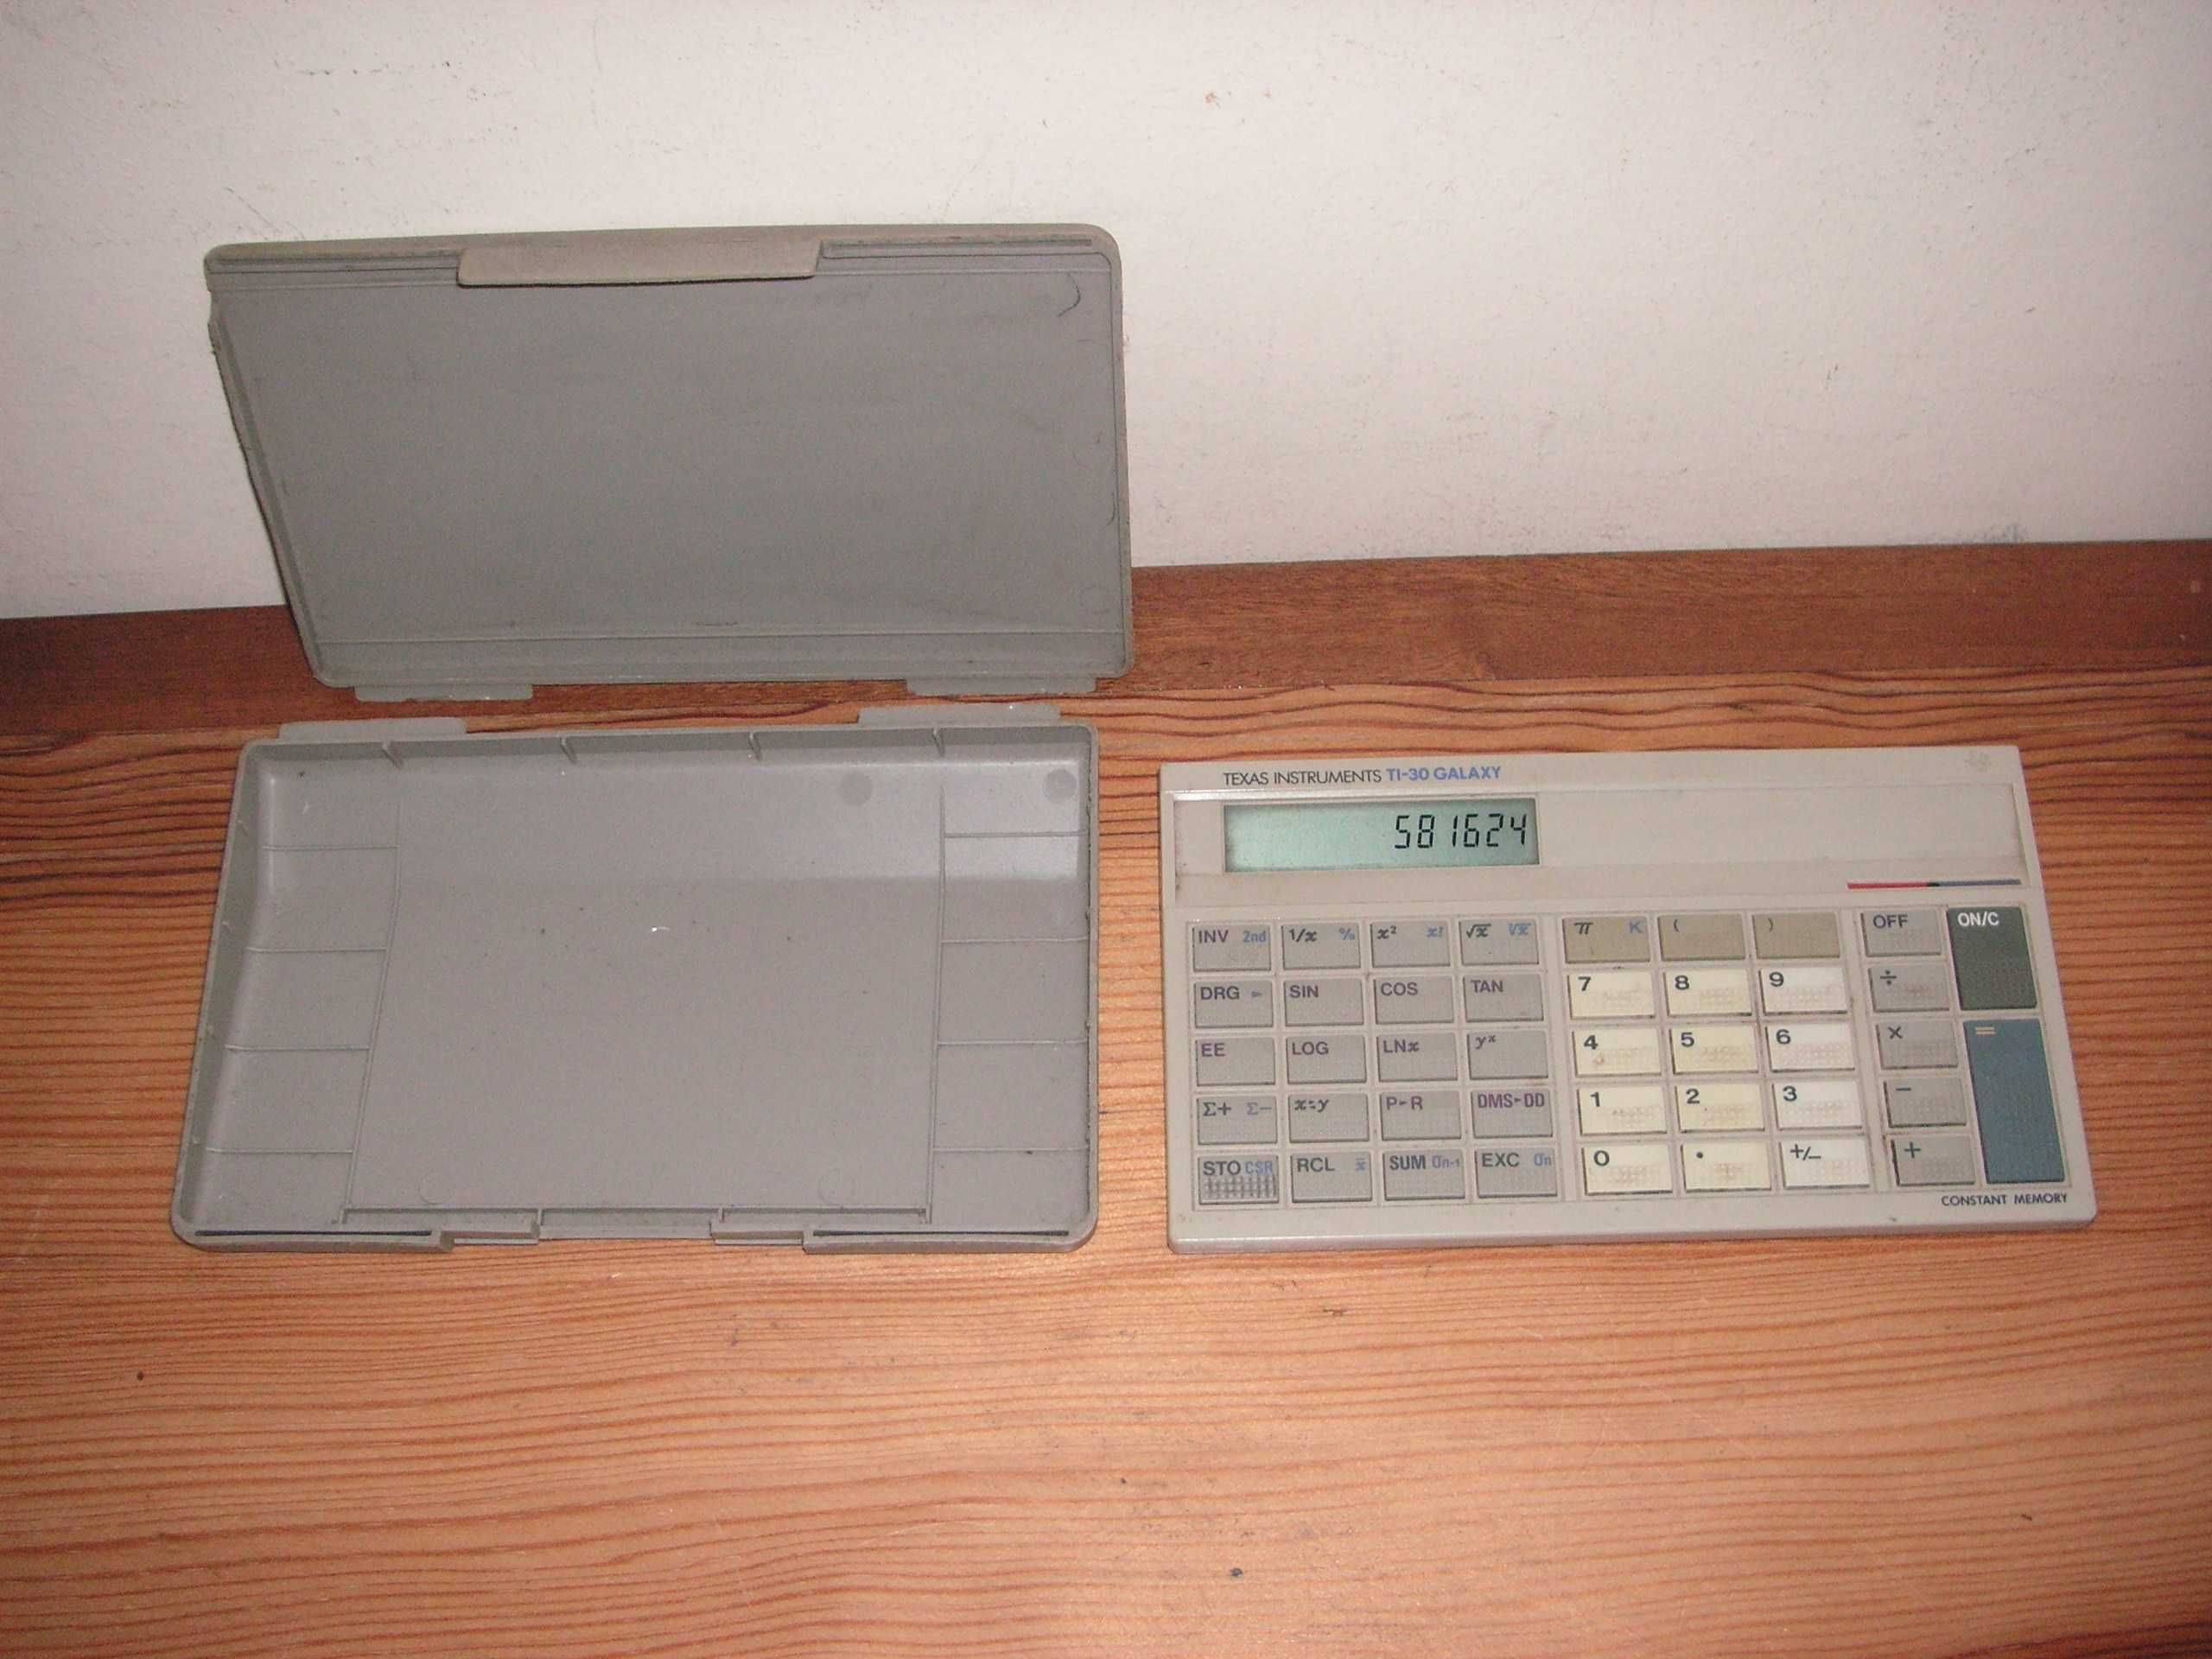 Máquina Calculadora Cientifica Texas Instruments TI-30 Galaxy